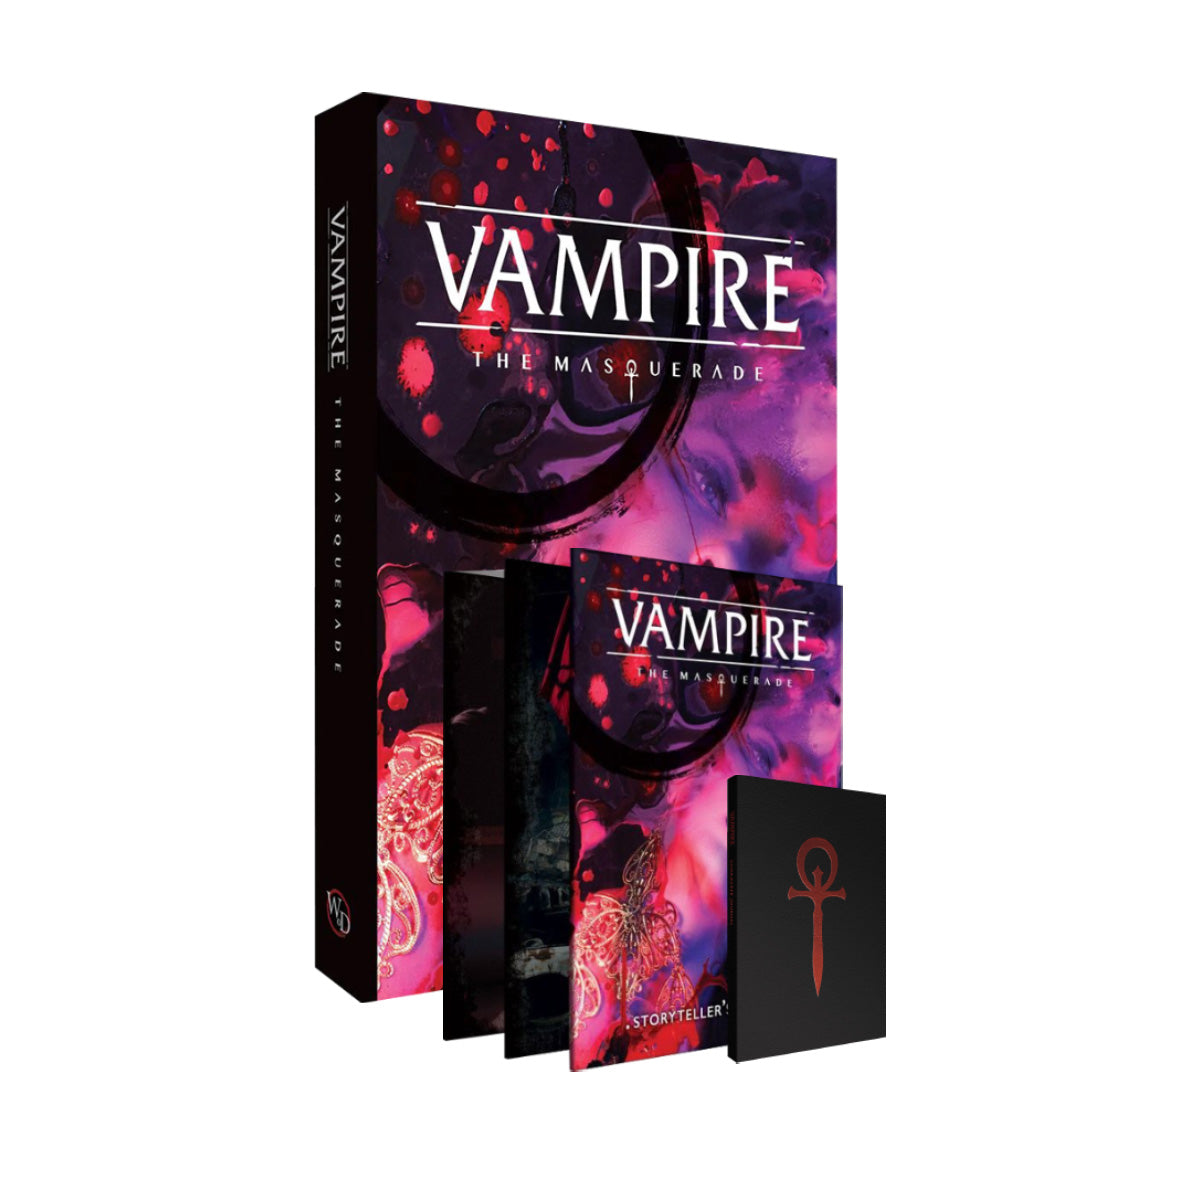 Vampire: The Masquerade 5th Edition Small Bundle